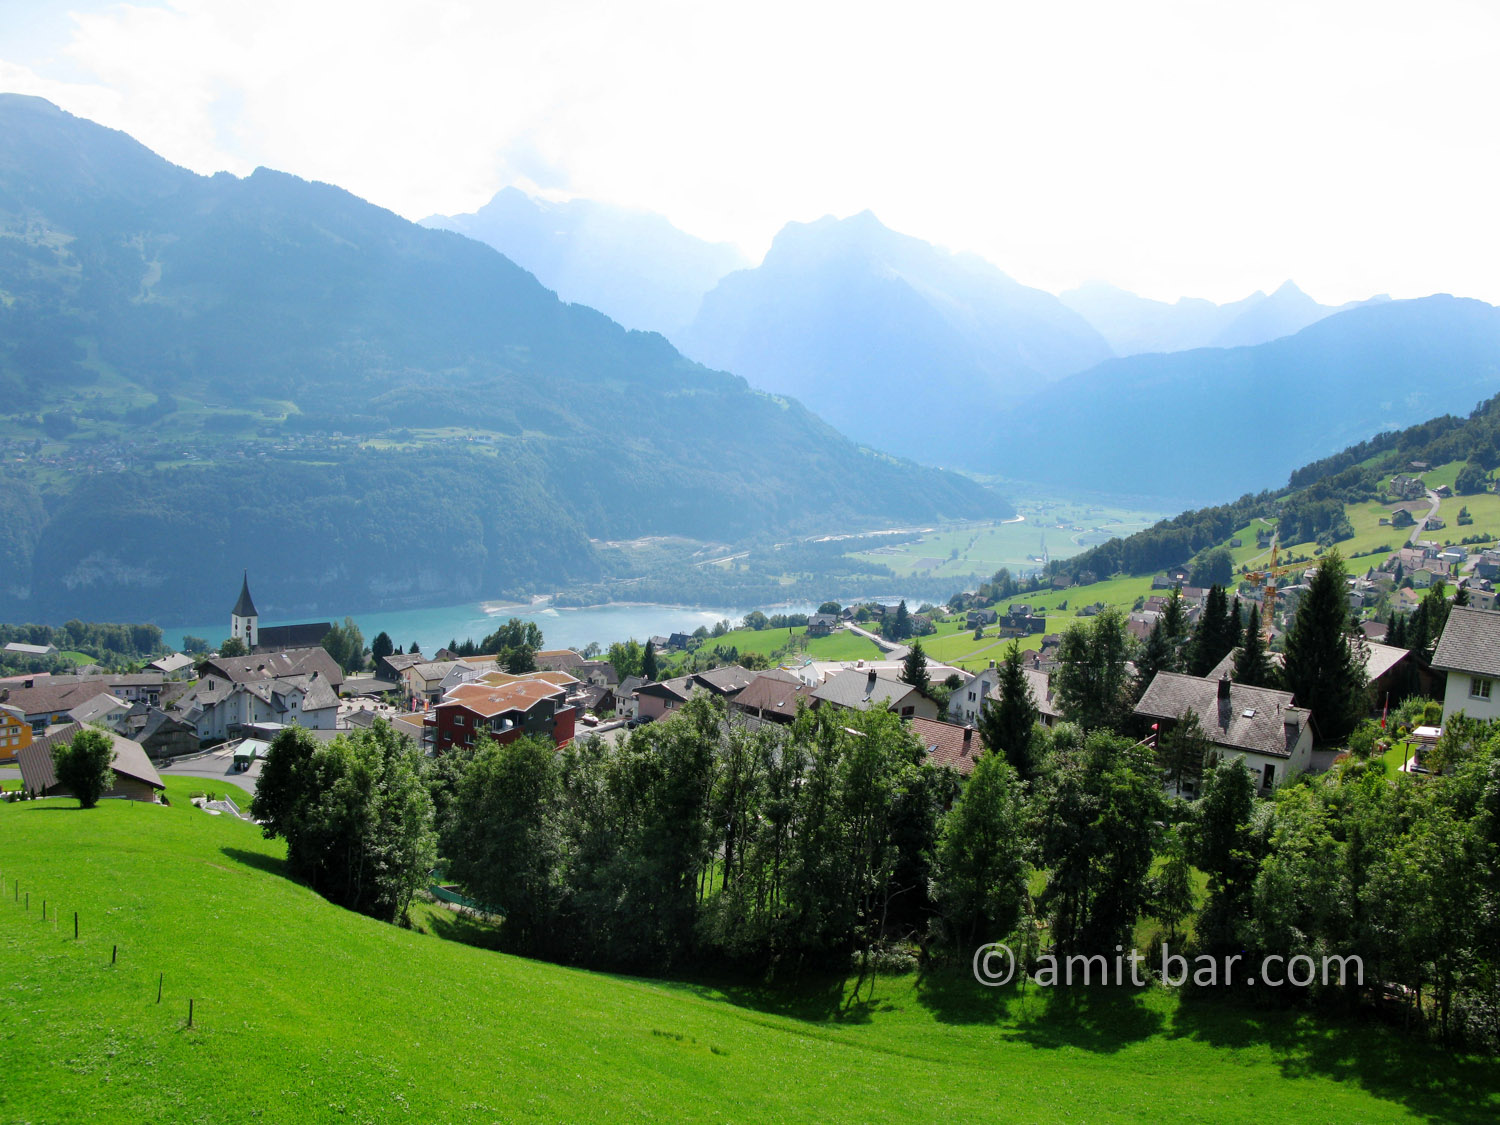 The mountains around Amden, Switzerland